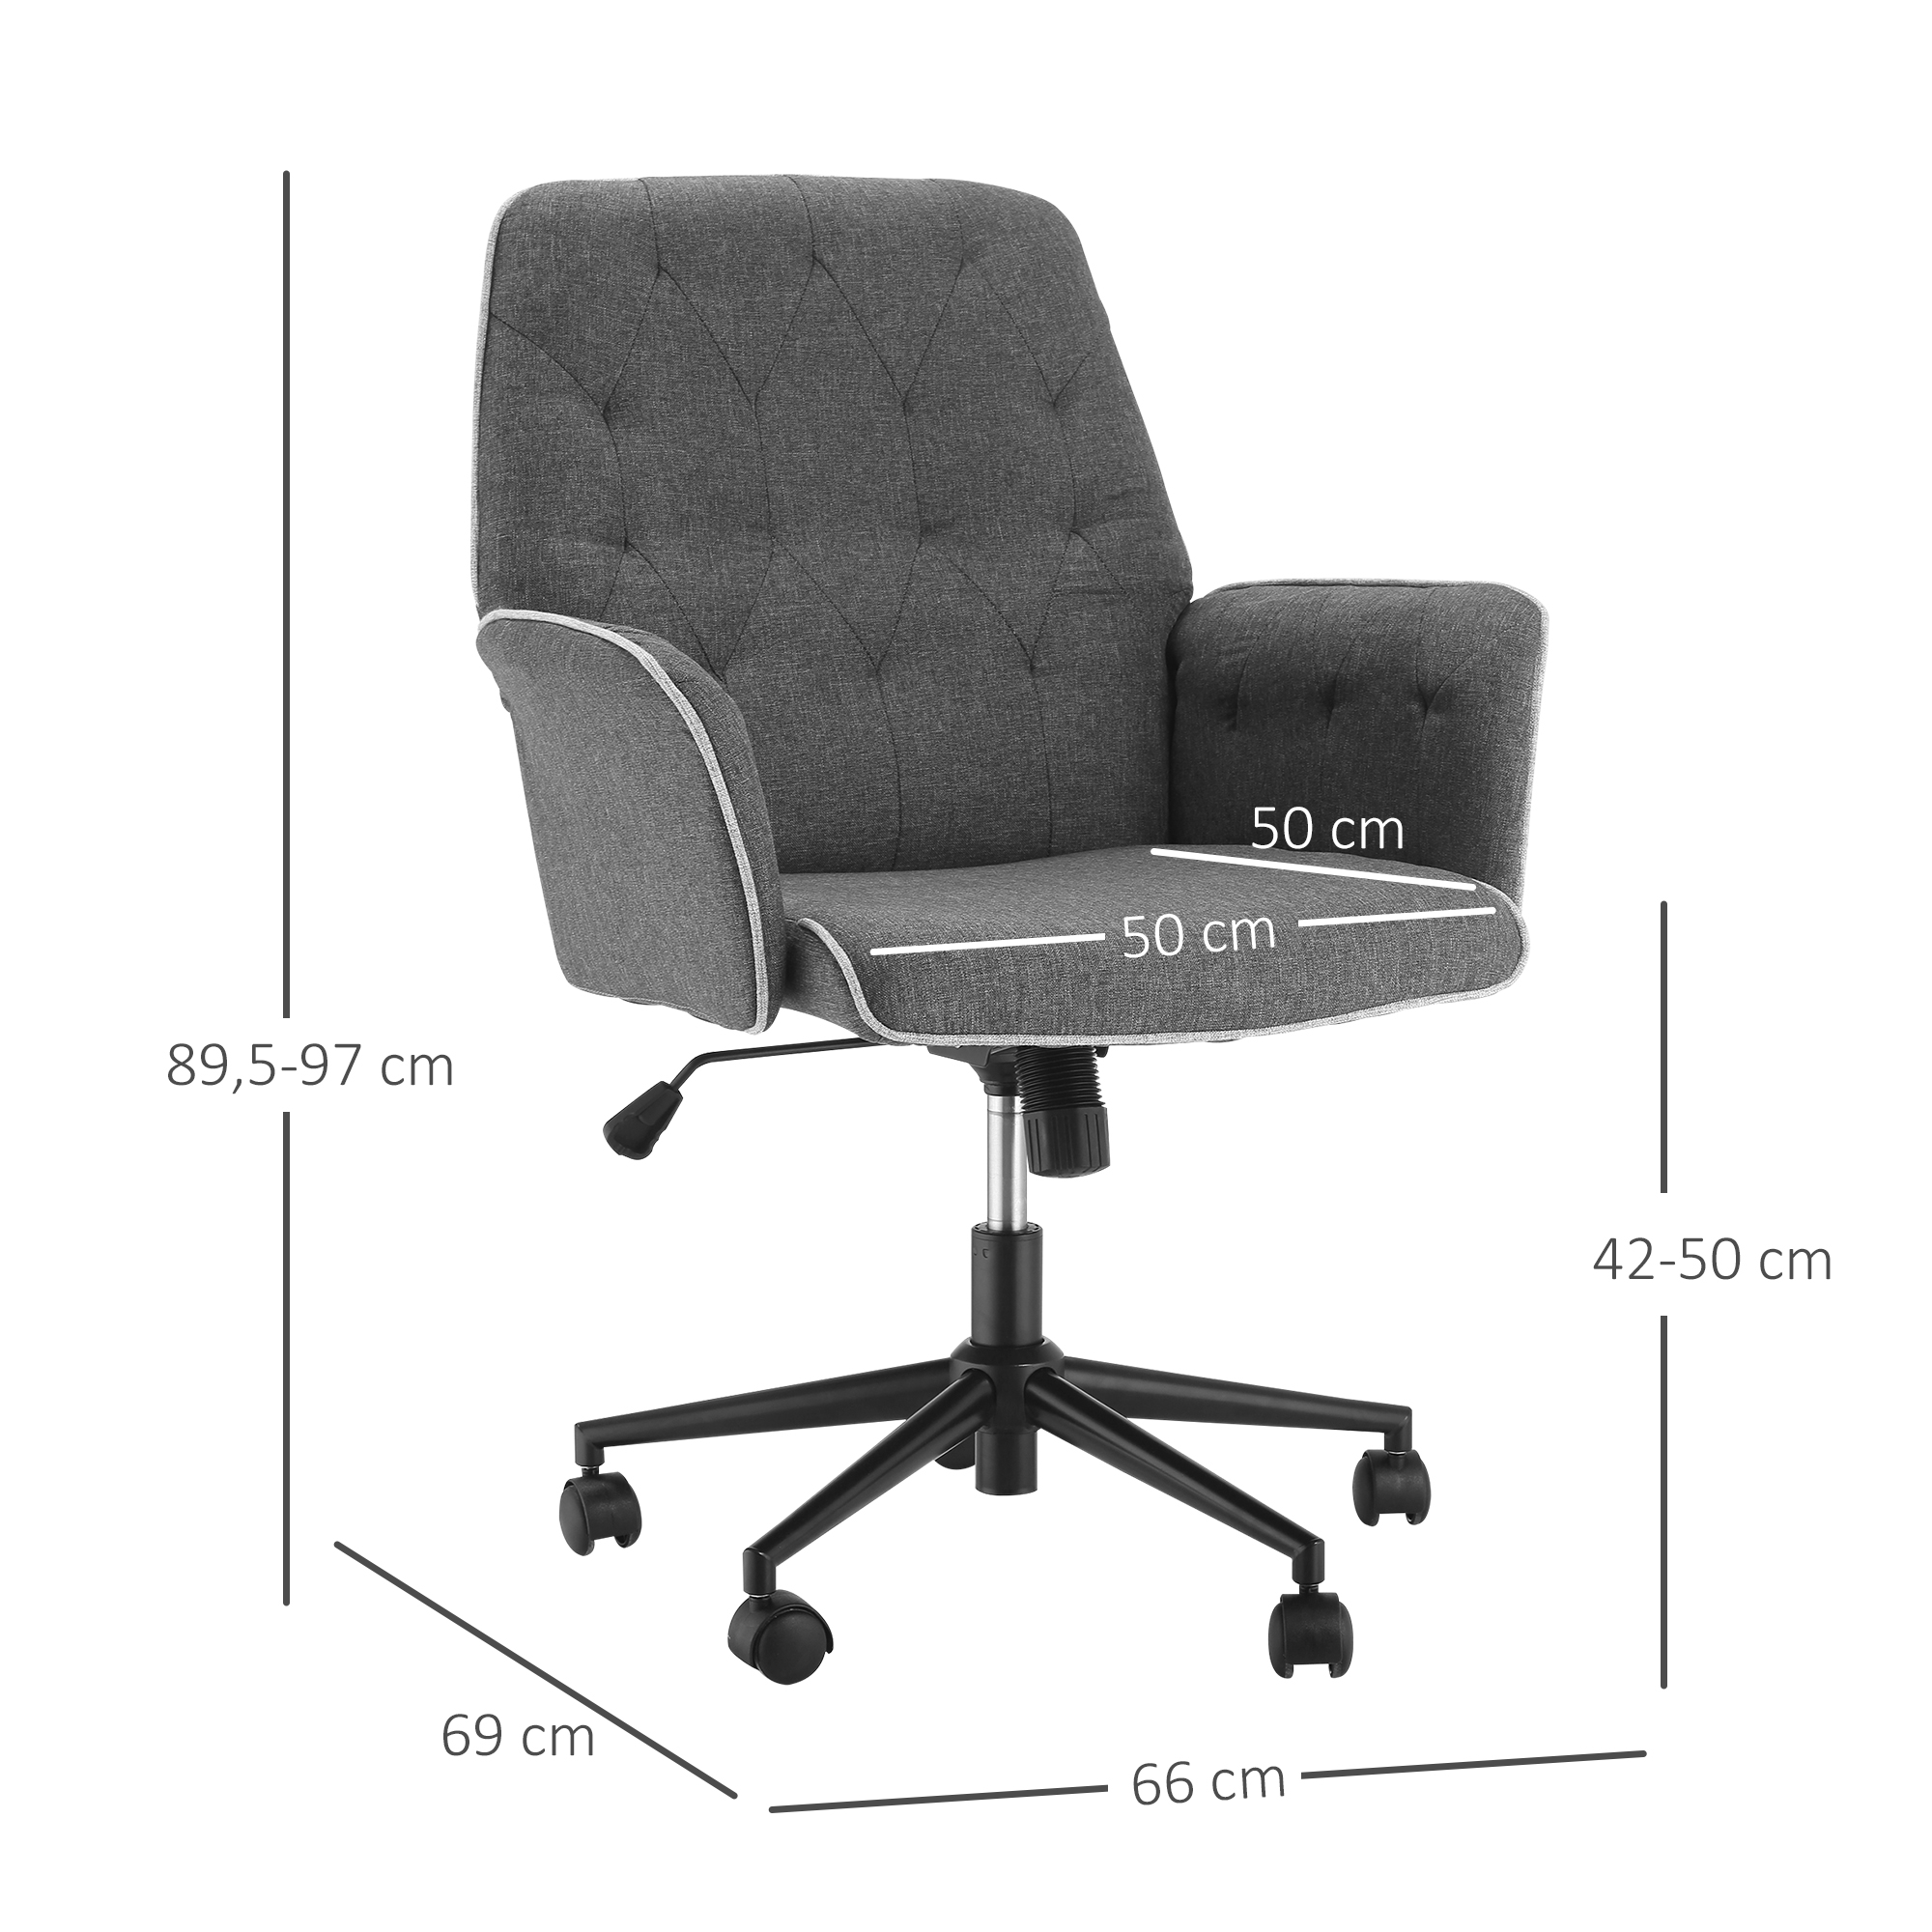 HOMCOM Bürostuhl x Norma24 Schreibtischstuhl 66 höhenverstellbarer 360°-Drehräder Wippfunktion mit Dunkelgrau ergonomisch Schaumstoff x 89,5-97 cm Home-Office-Stuhl | Drehstuhl 69